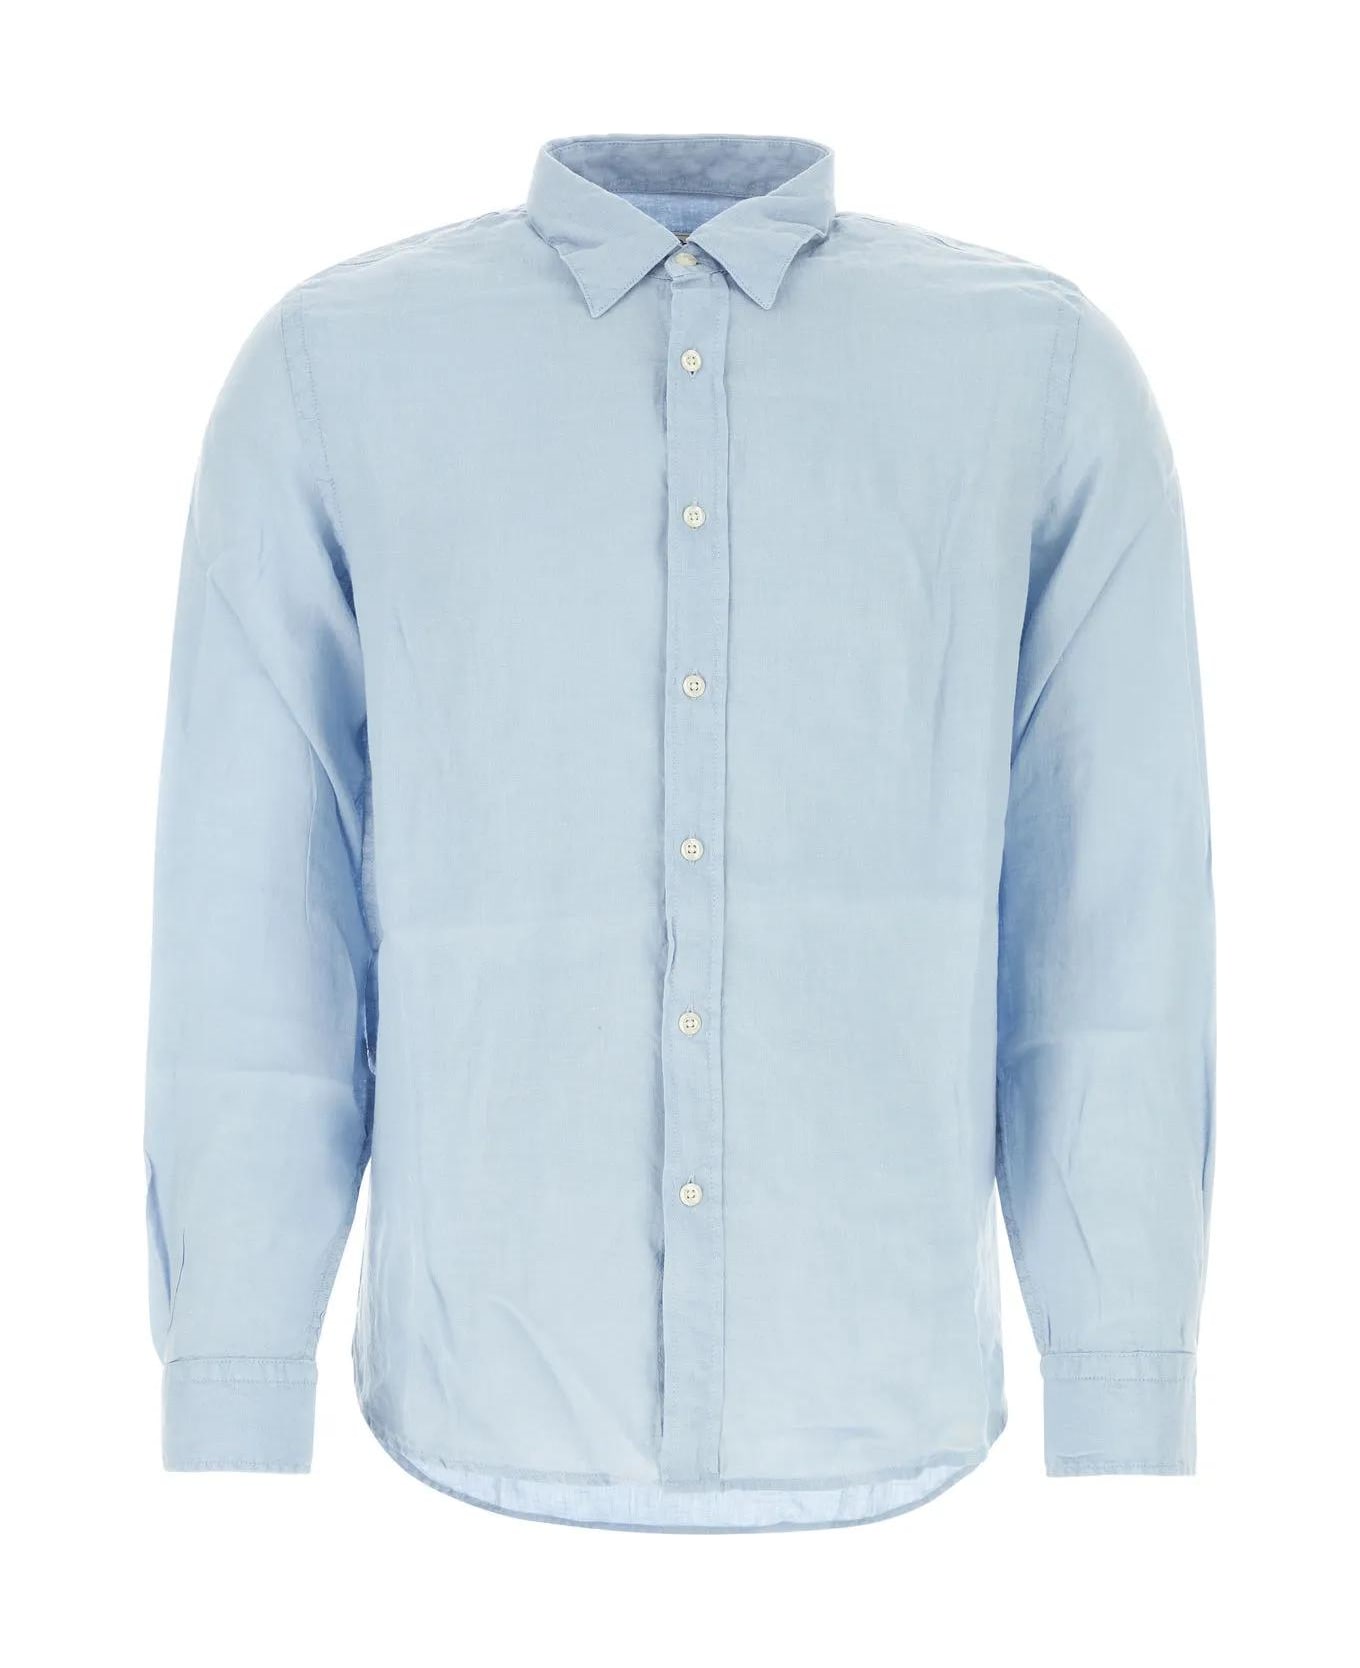 Woolrich Light-blue Linen Shirt - Azzurro シャツ